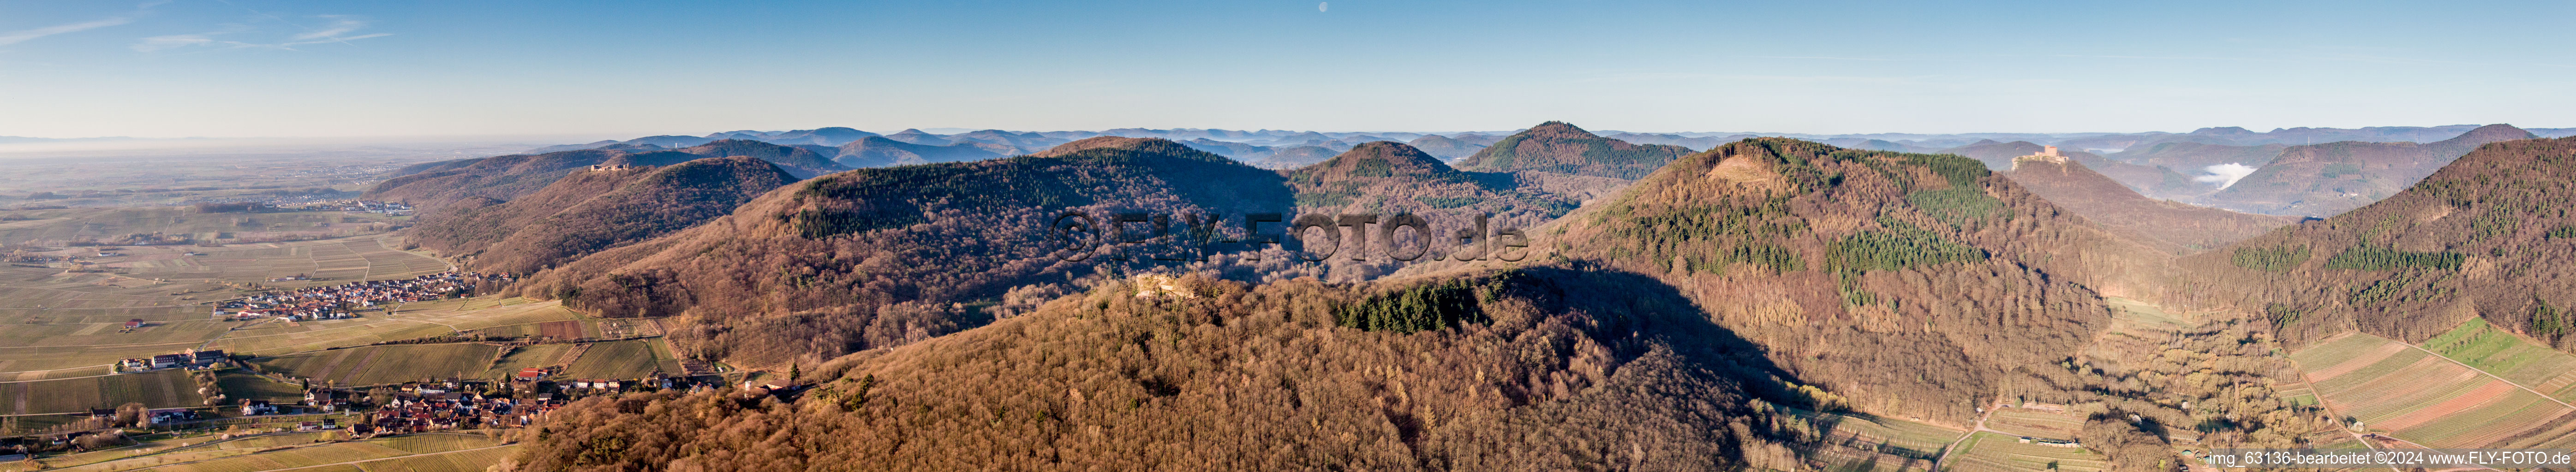 Panorama des Haardtrand des Pfälzerwaldes mit Dorf - Ansicht zwischen Weinbergen in Ranschbach im Bundesland Rheinland-Pfalz, Deutschland